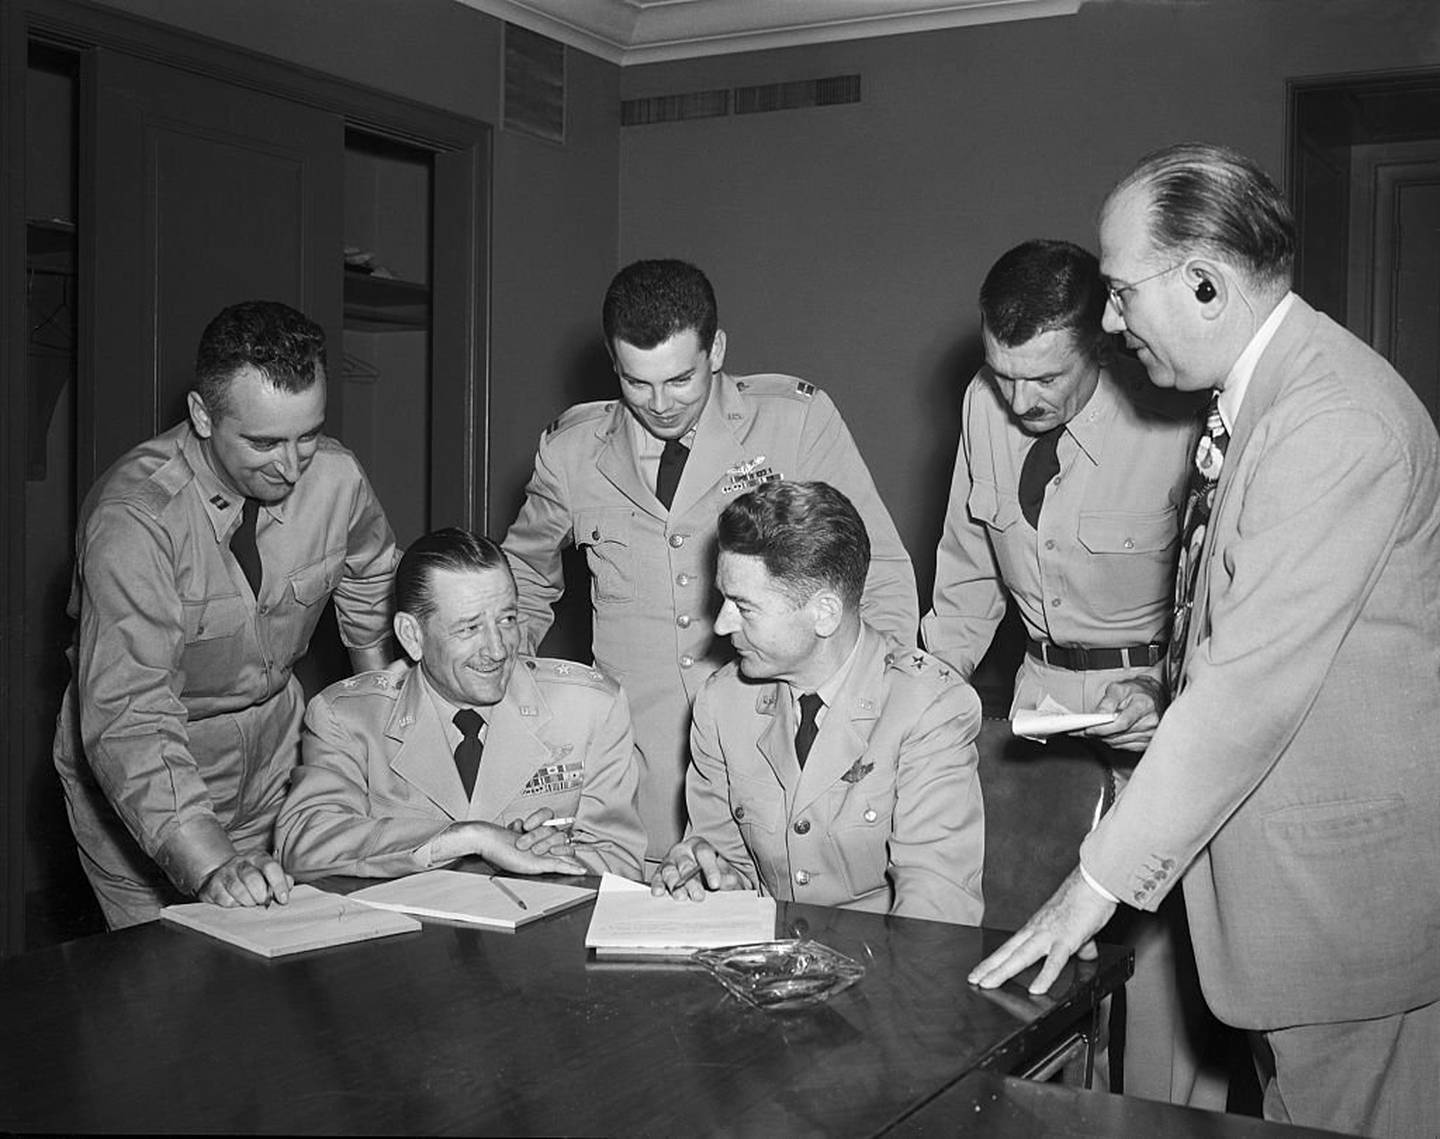 Conferencia de militares investigadores del fenómeno OVNI en 1952